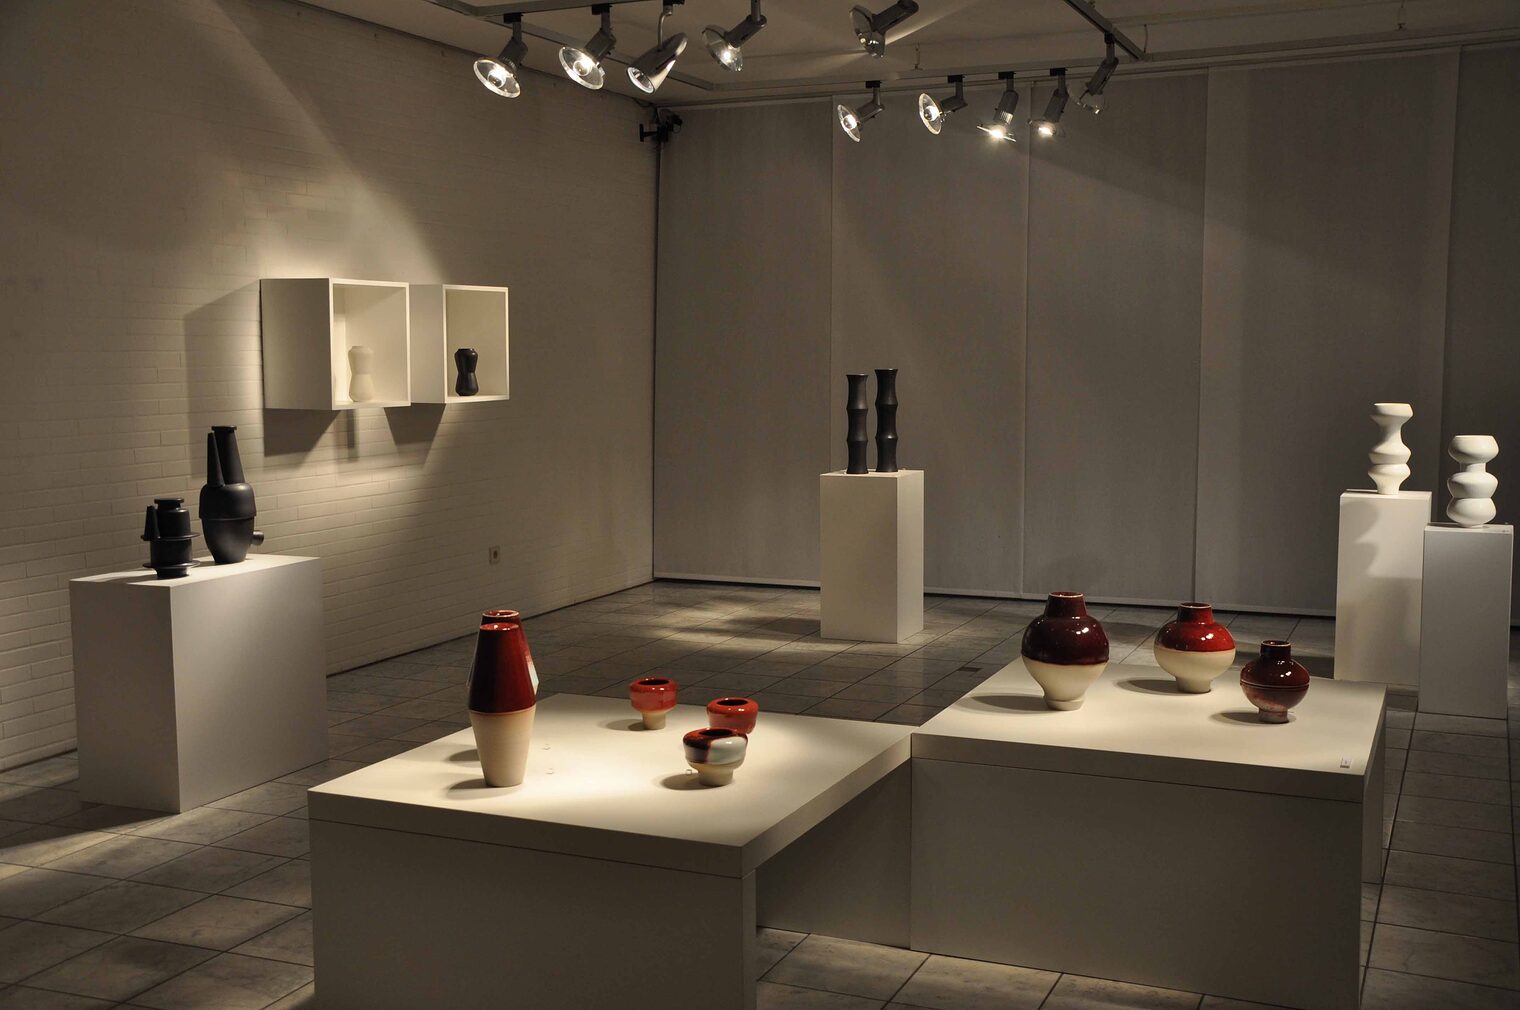 Ausdrucksstark: Die Keramikgefäße von Lutz Könecke